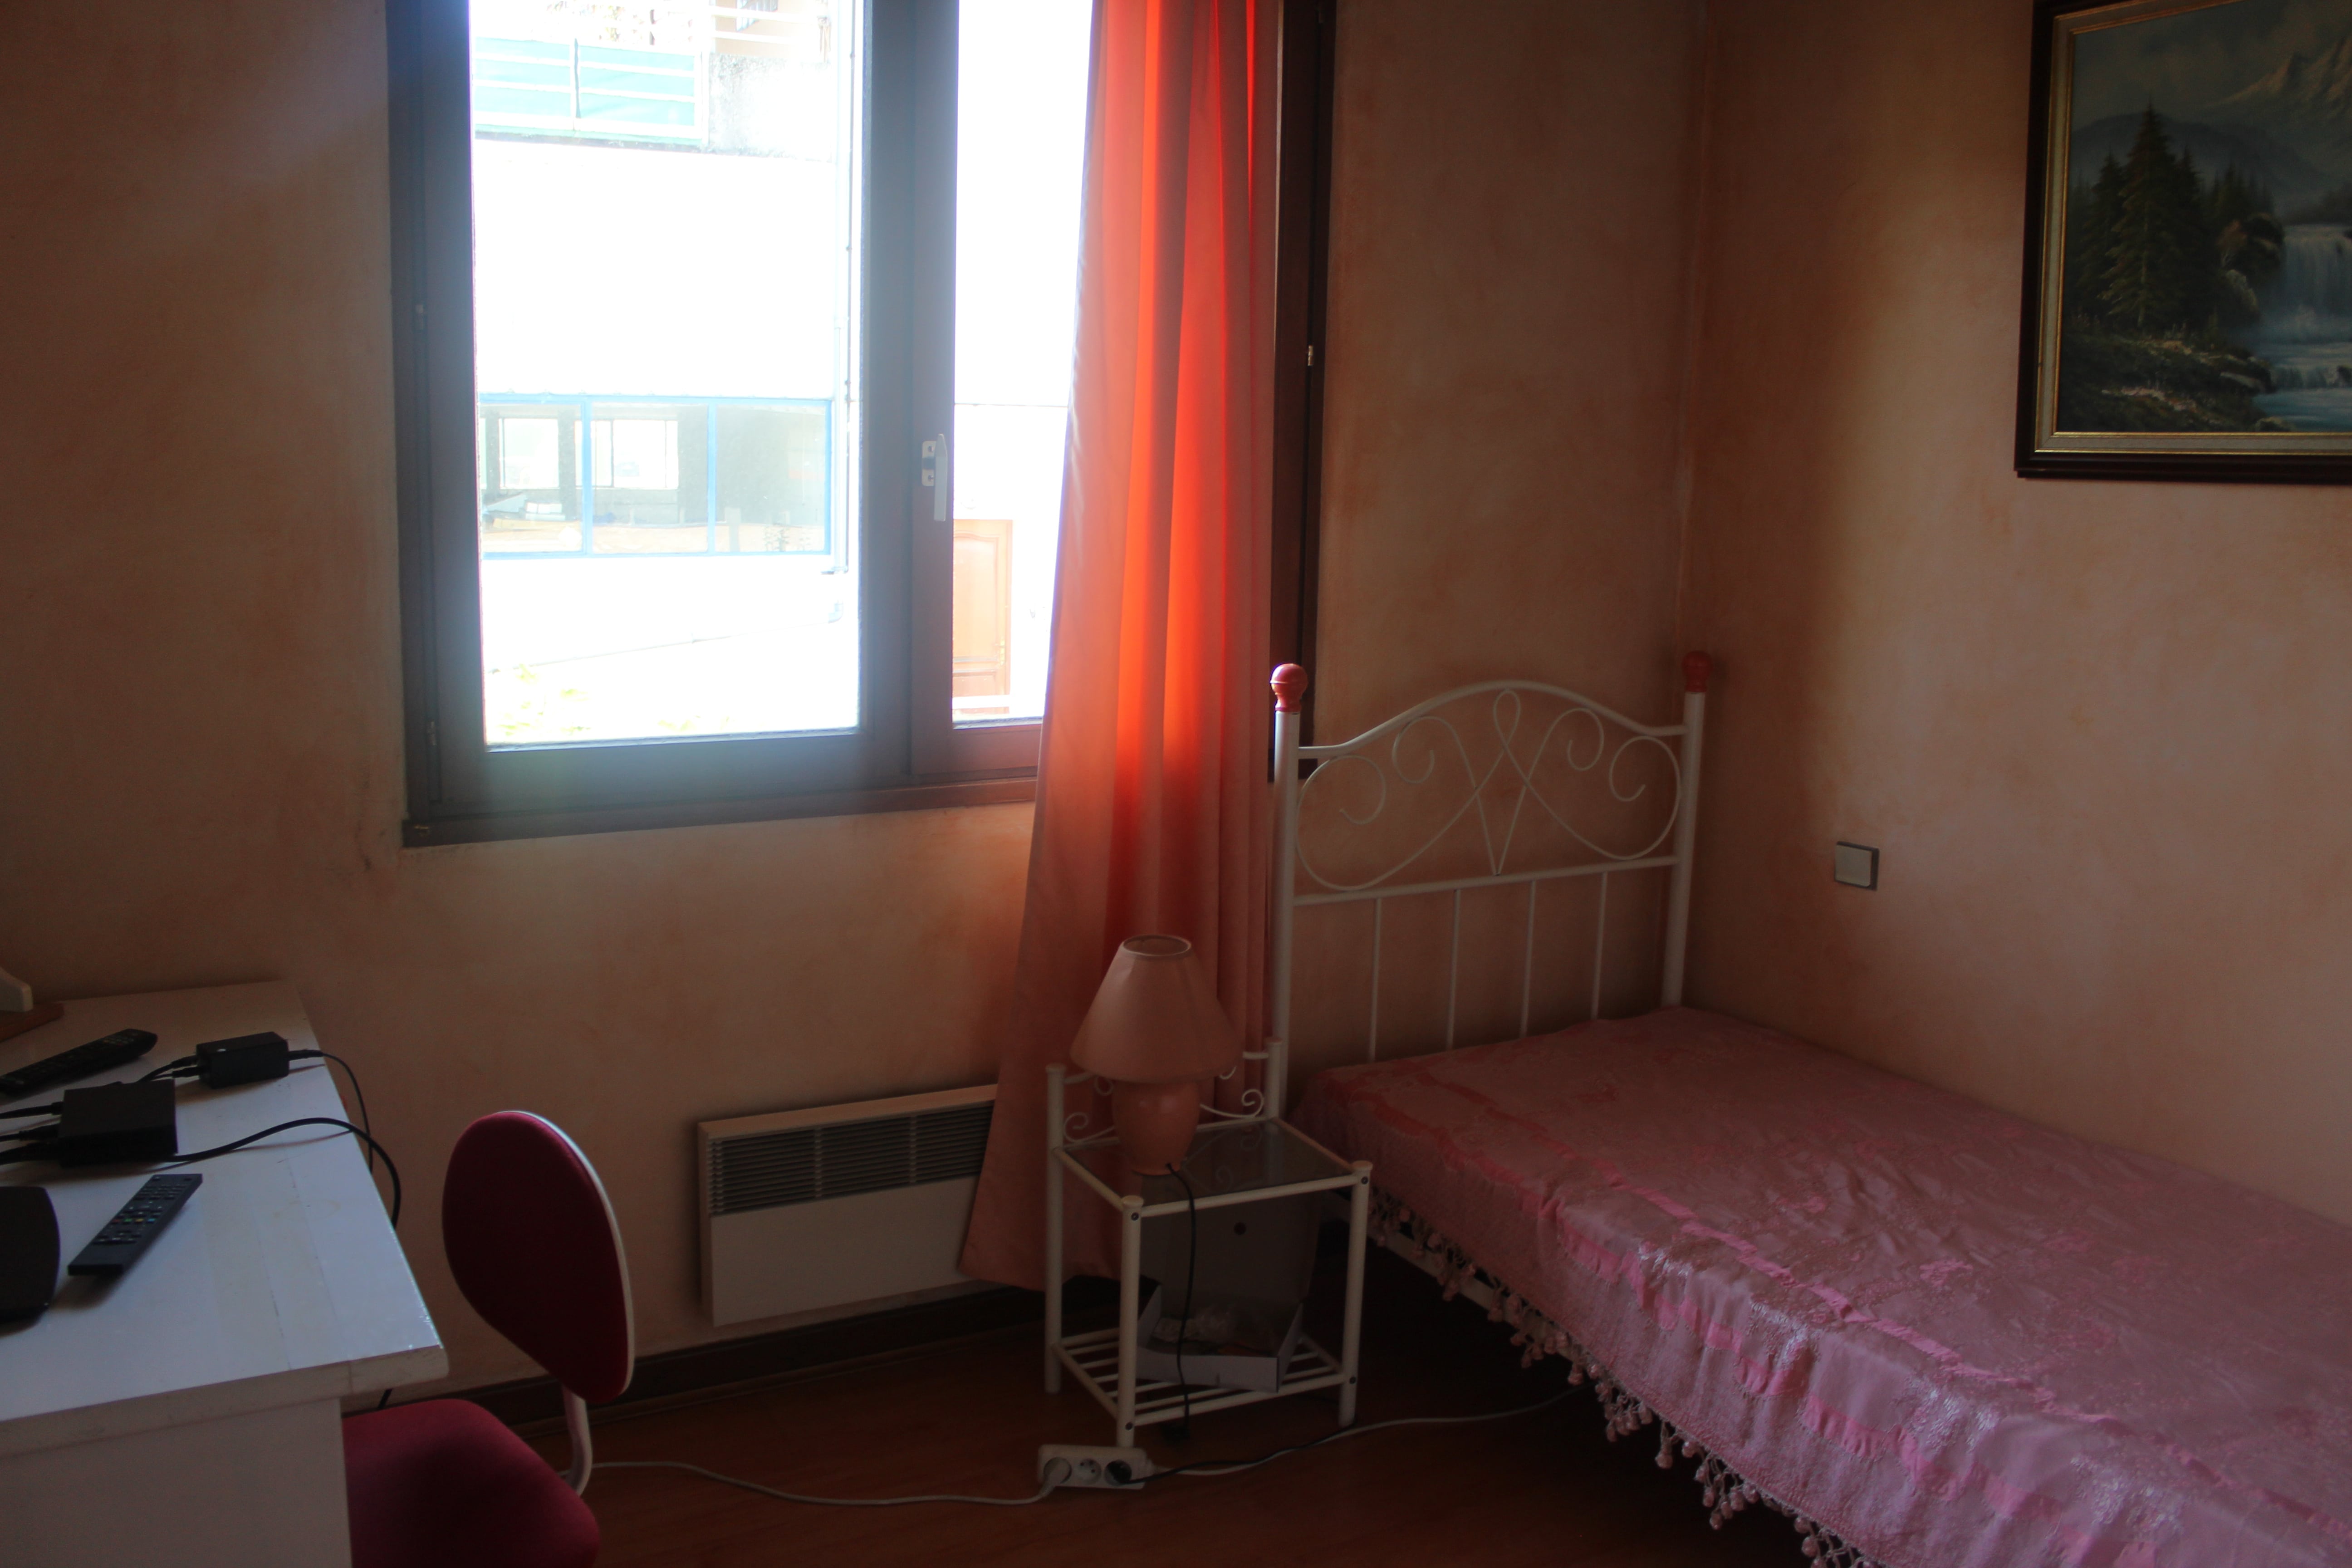 Chambre pour fille: 10 m2, placard mural, 1 lit, 1 bureau, 1 chaise, 1 tv, 2 mirroirs, le prix - 350 euros , toutes charges comprises